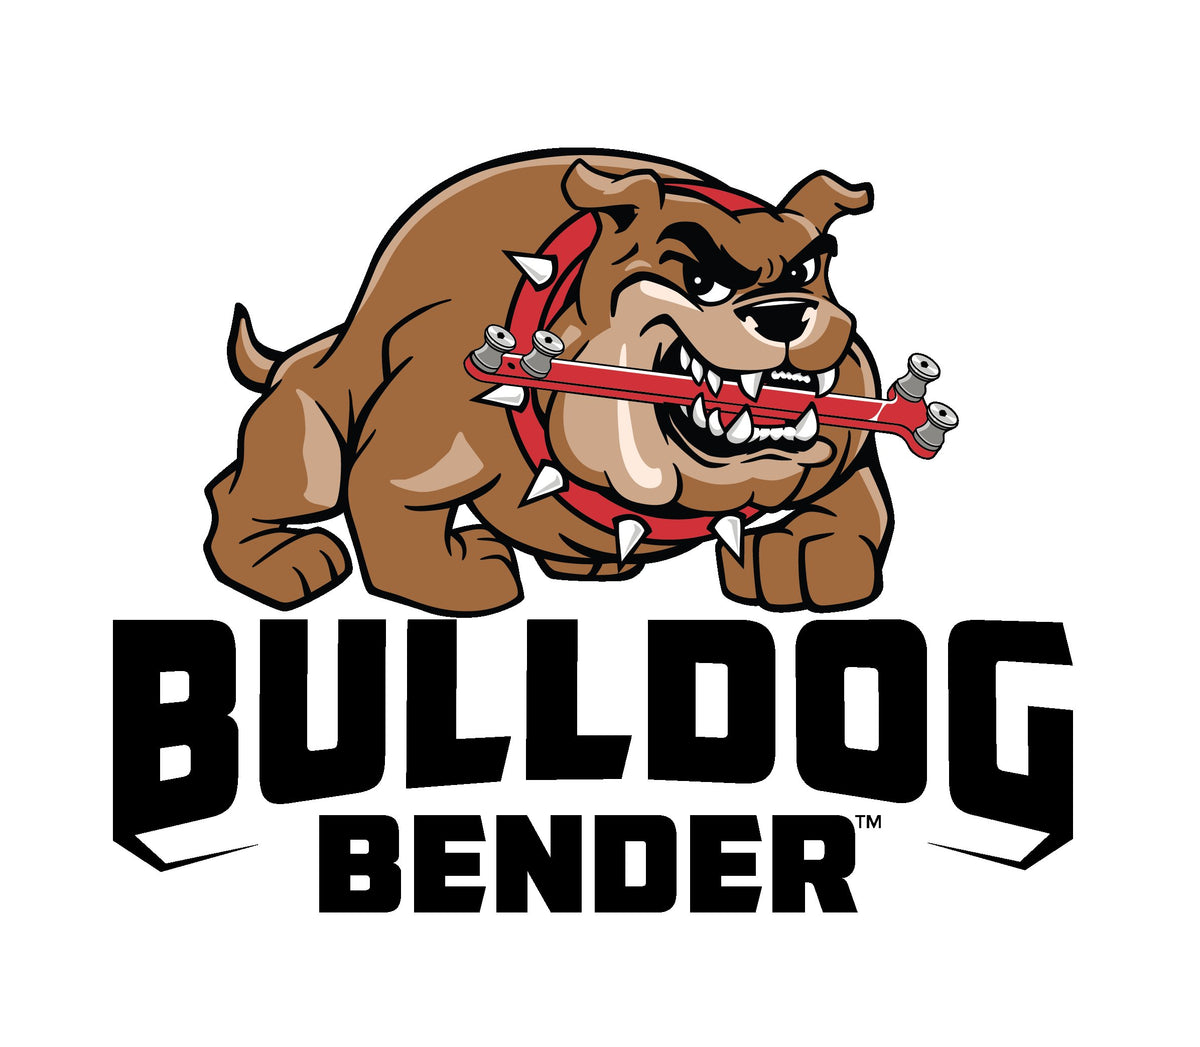 The Bulldog Original Bender